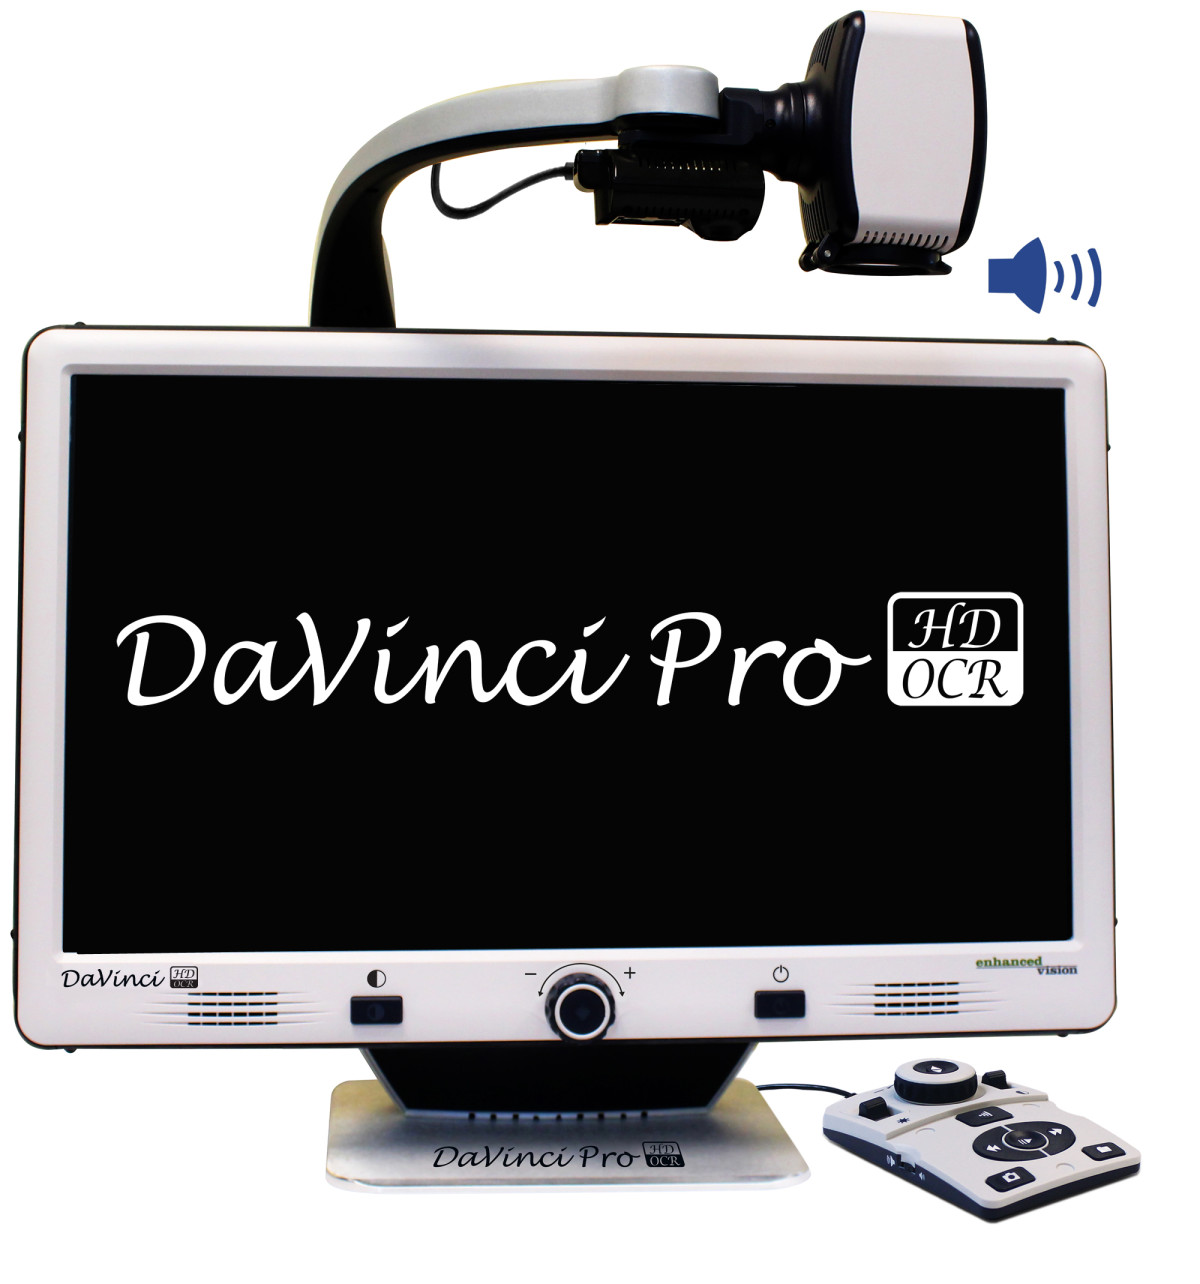 DaVinci Pro HD/OCR – Videoingranditore con OCR